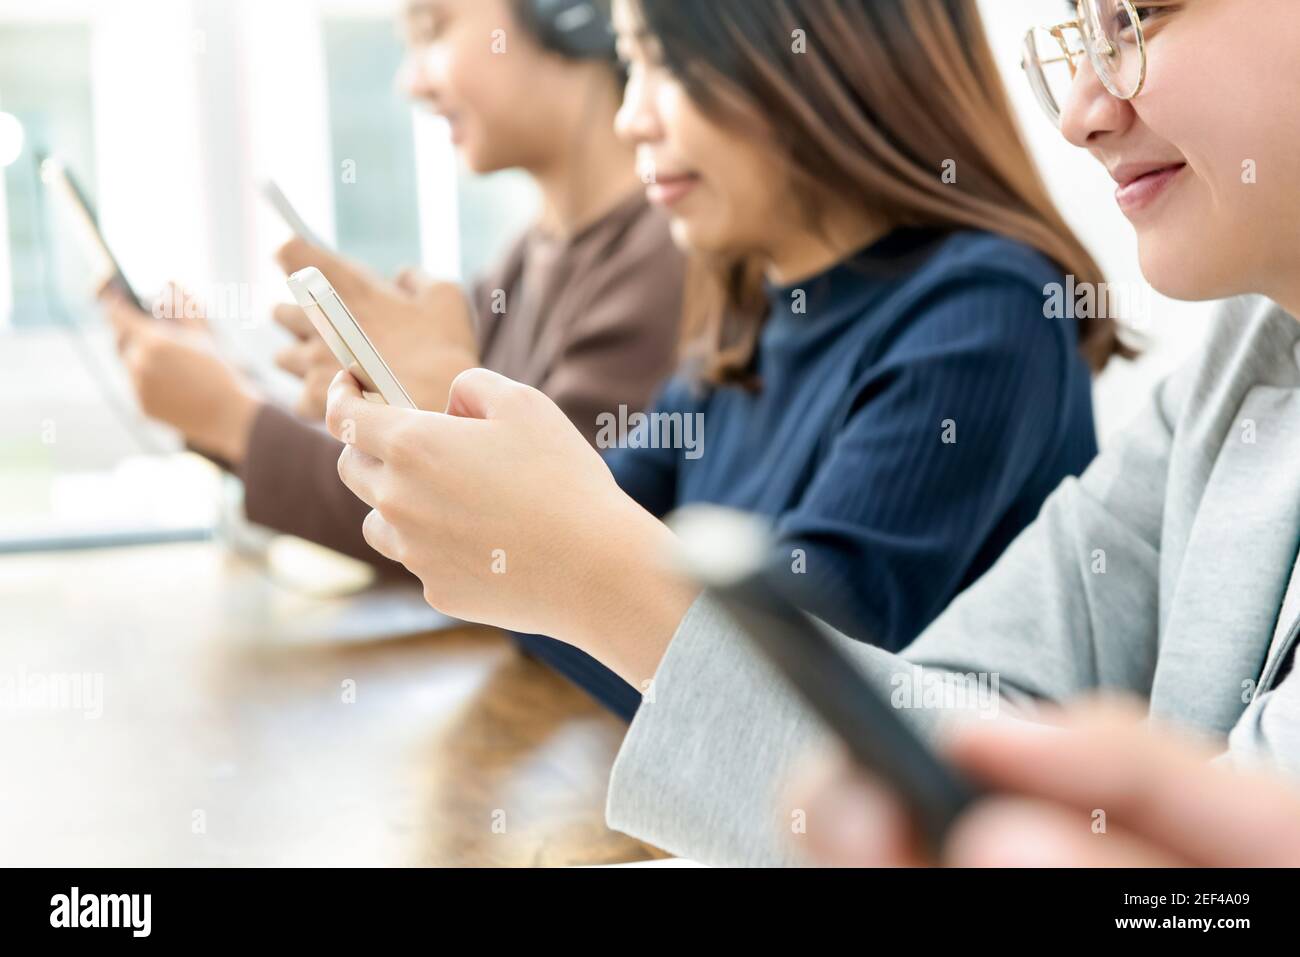 Gruppe weiblicher Teenager, die auf Smartphones im Internet surfen Stockfoto